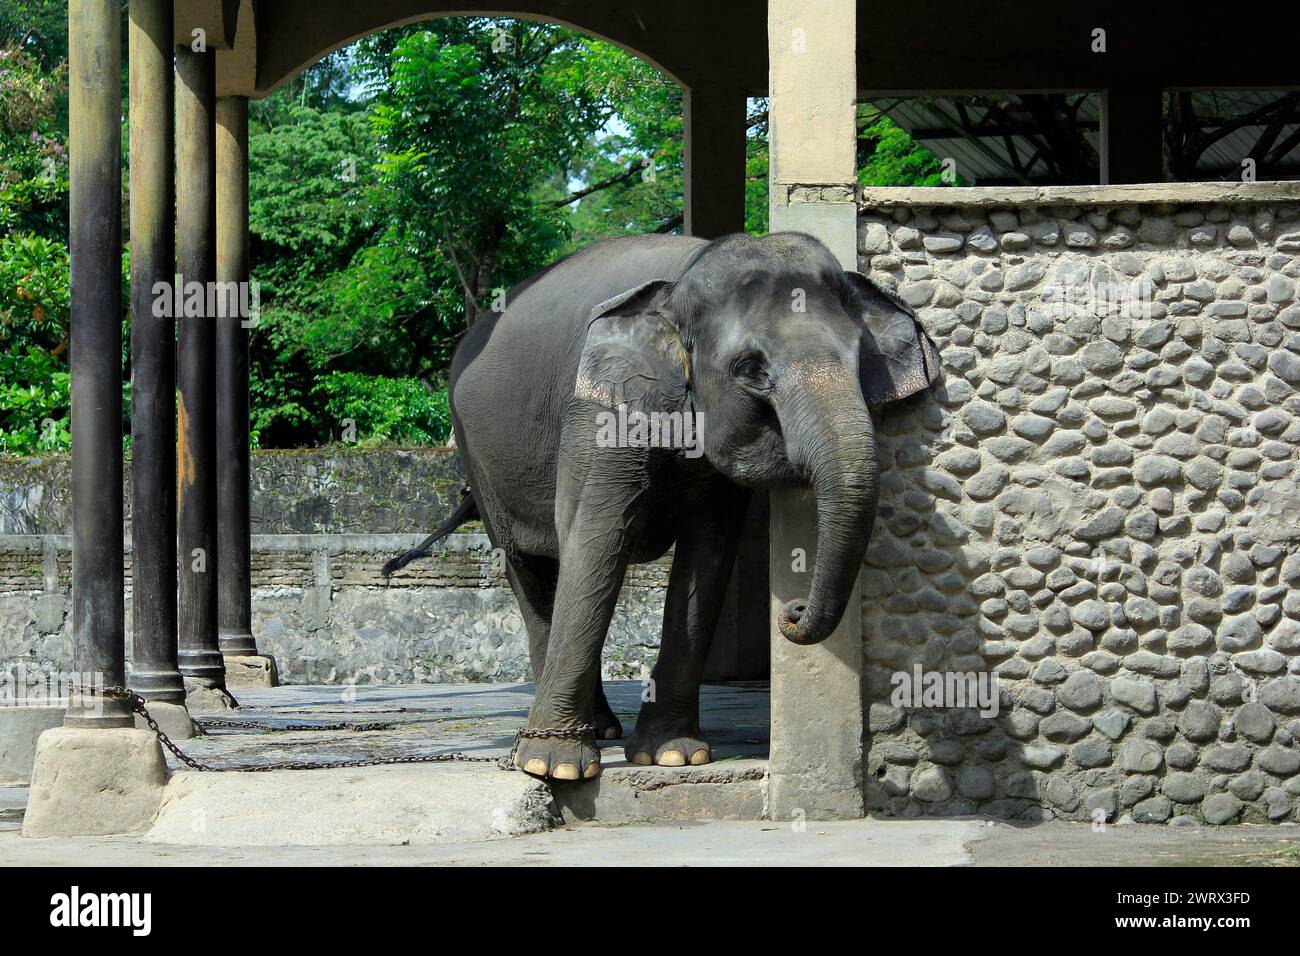 L'elefante di Sumatra (Elephas Maximus sumatrensis), una sottospecie di elefante asiatico, è relativamente più piccolo, ha i piedi incatenati ed è in cattive condizioni. Foto Stock